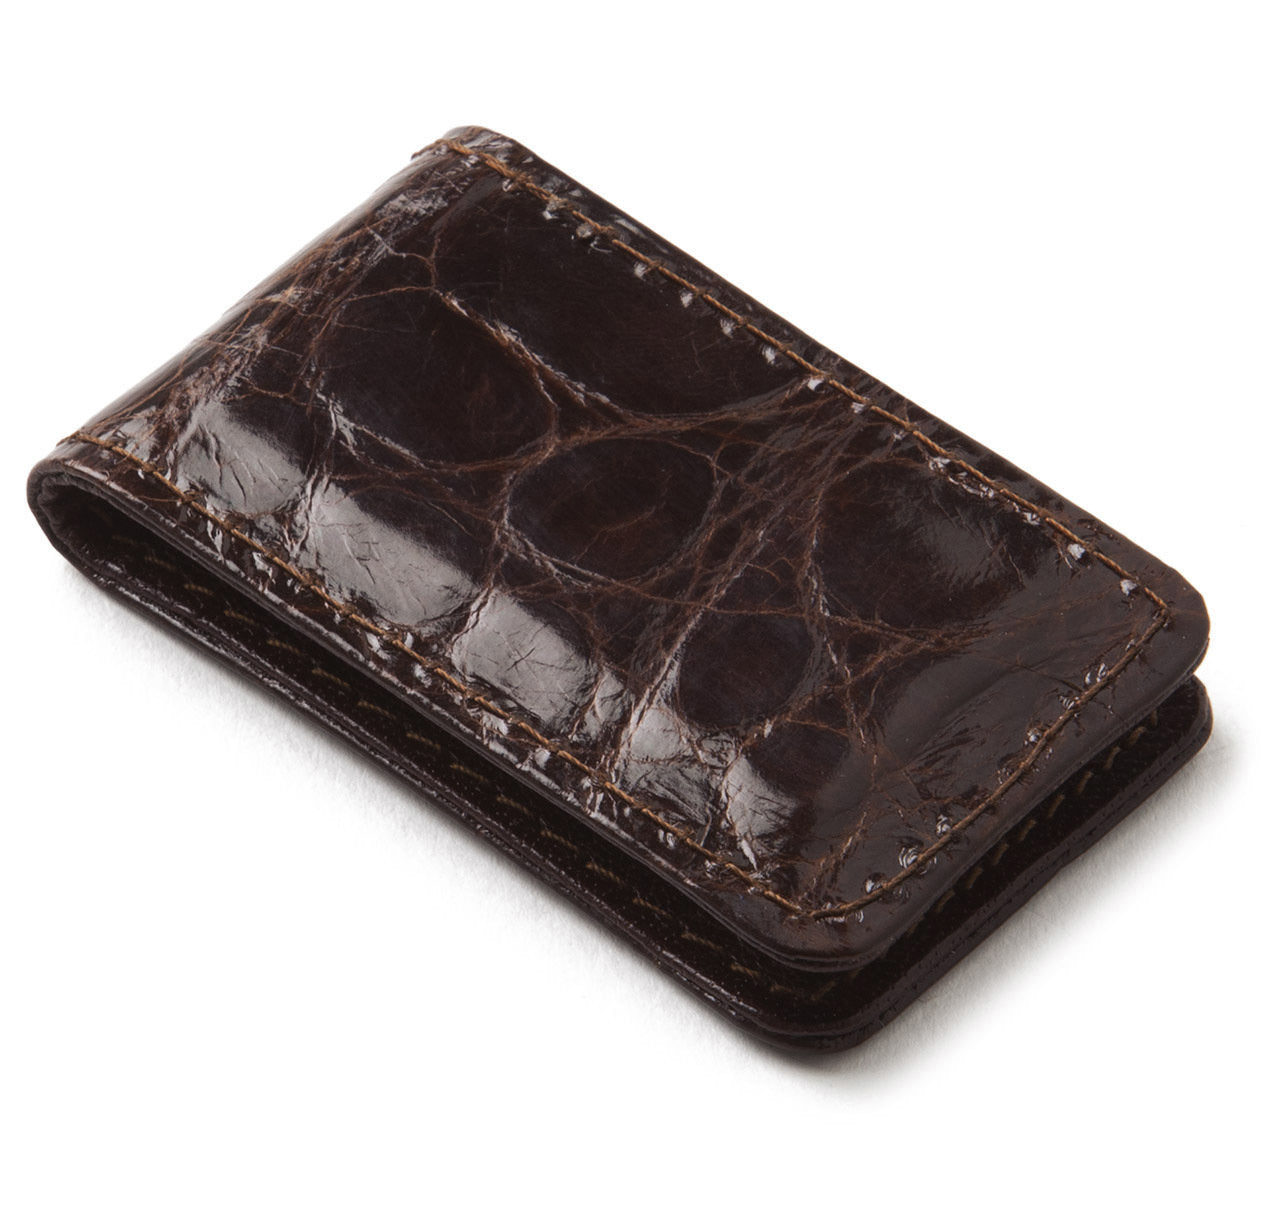 Glazed Alligator Money Clip in Chocolate Brown